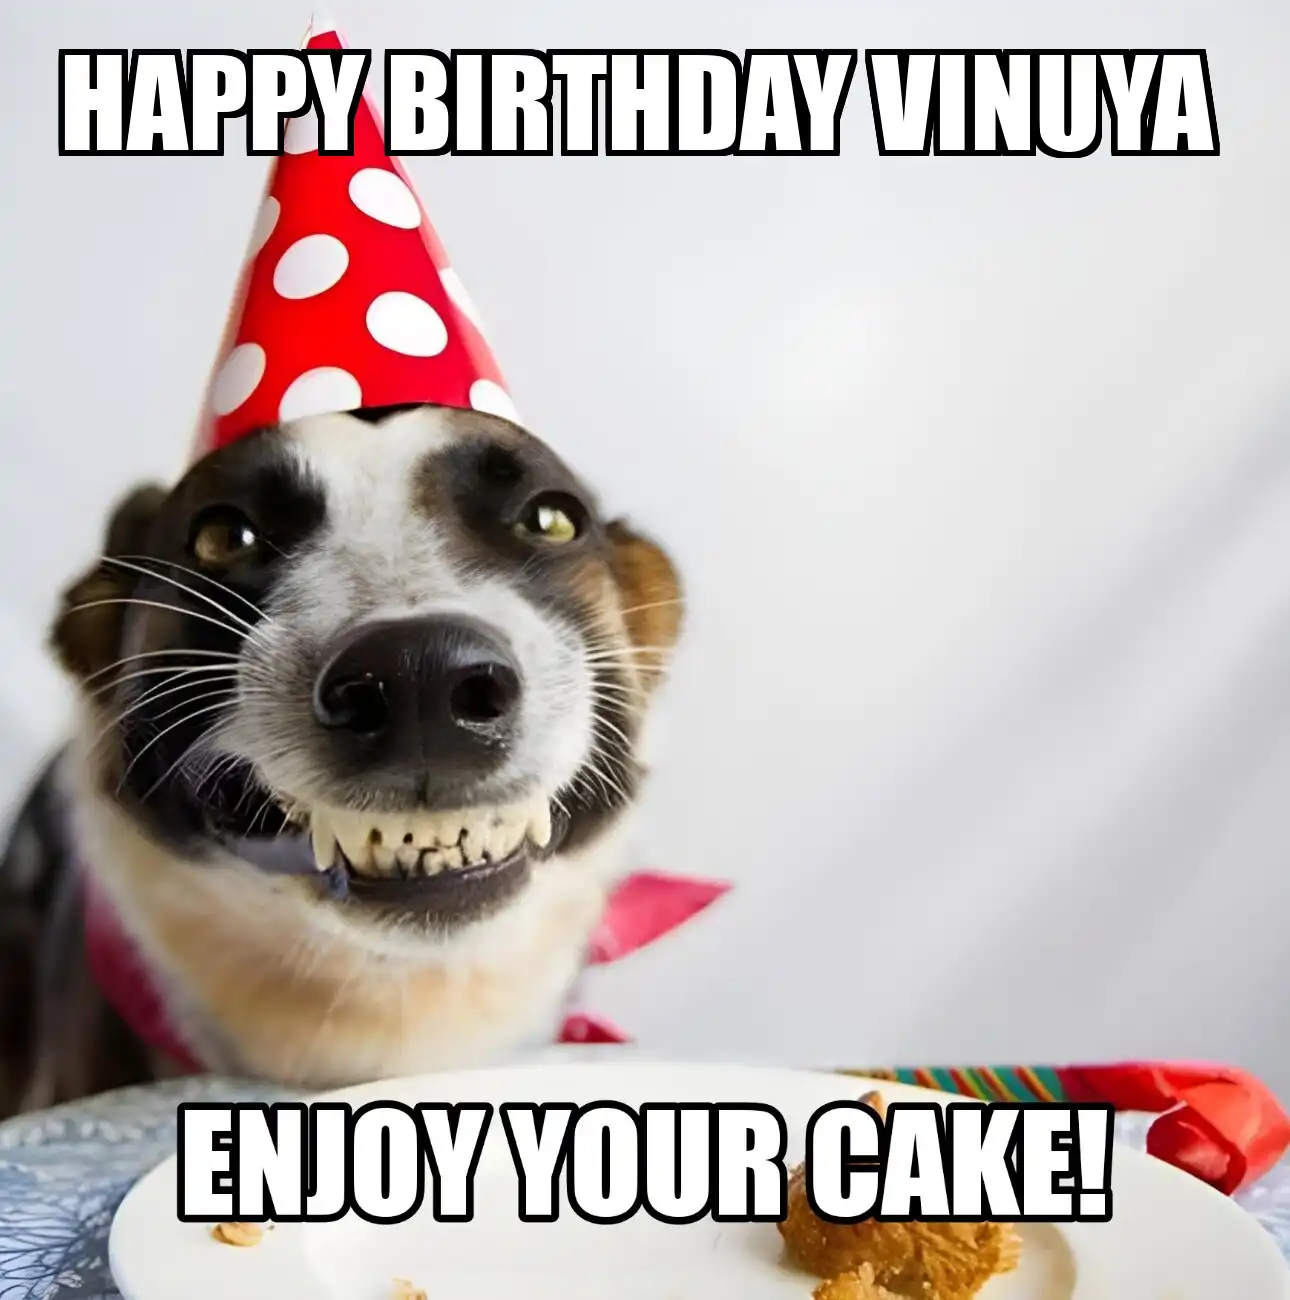 Happy Birthday Vinuya Enjoy Your Cake Dog Meme